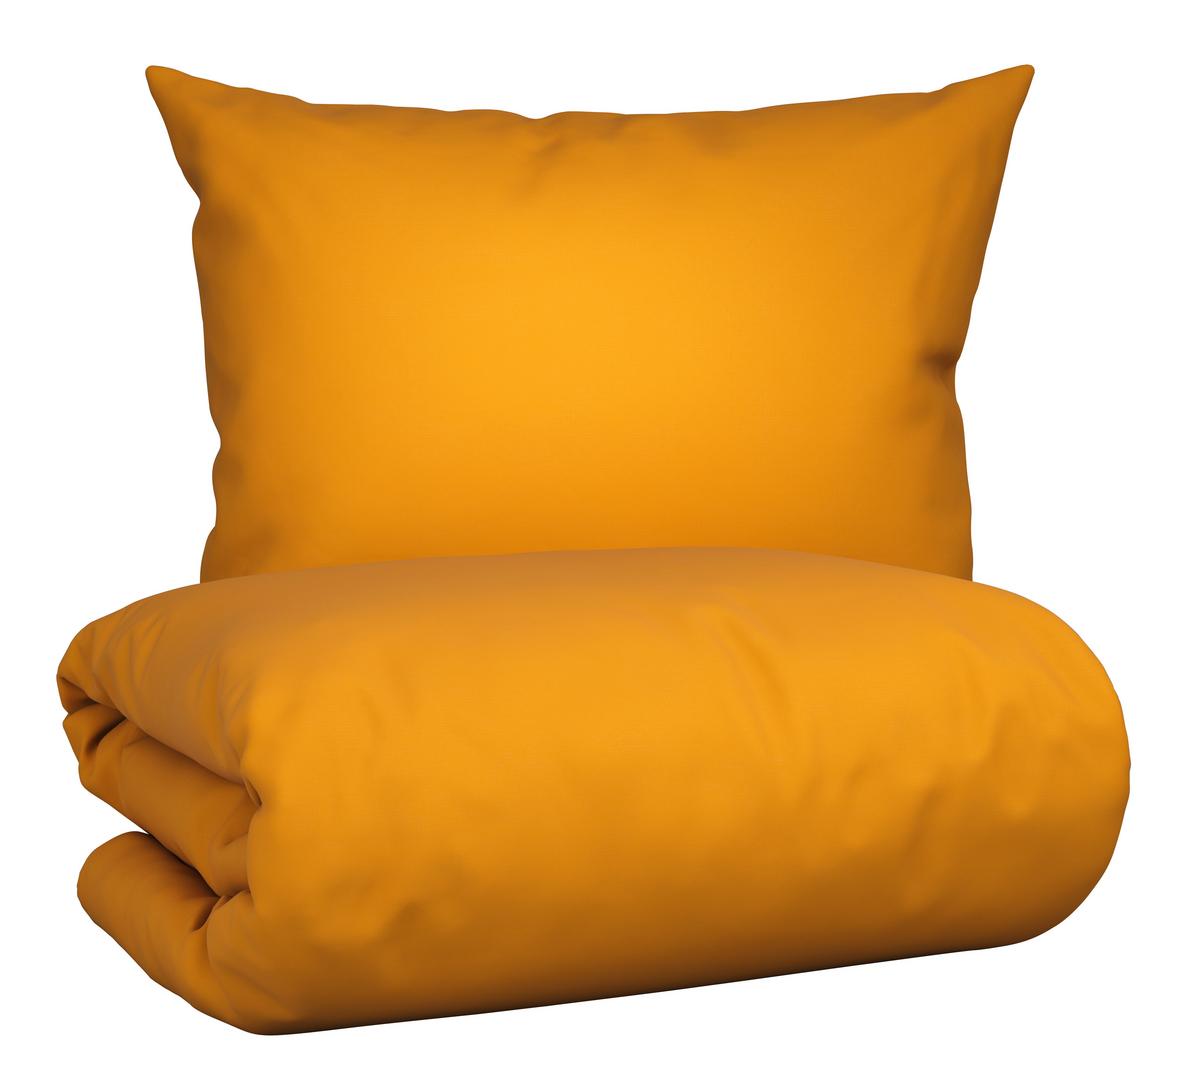 Bettwäsche Iris ➤ in Gelb mömax kaufen 160x210cm online ca